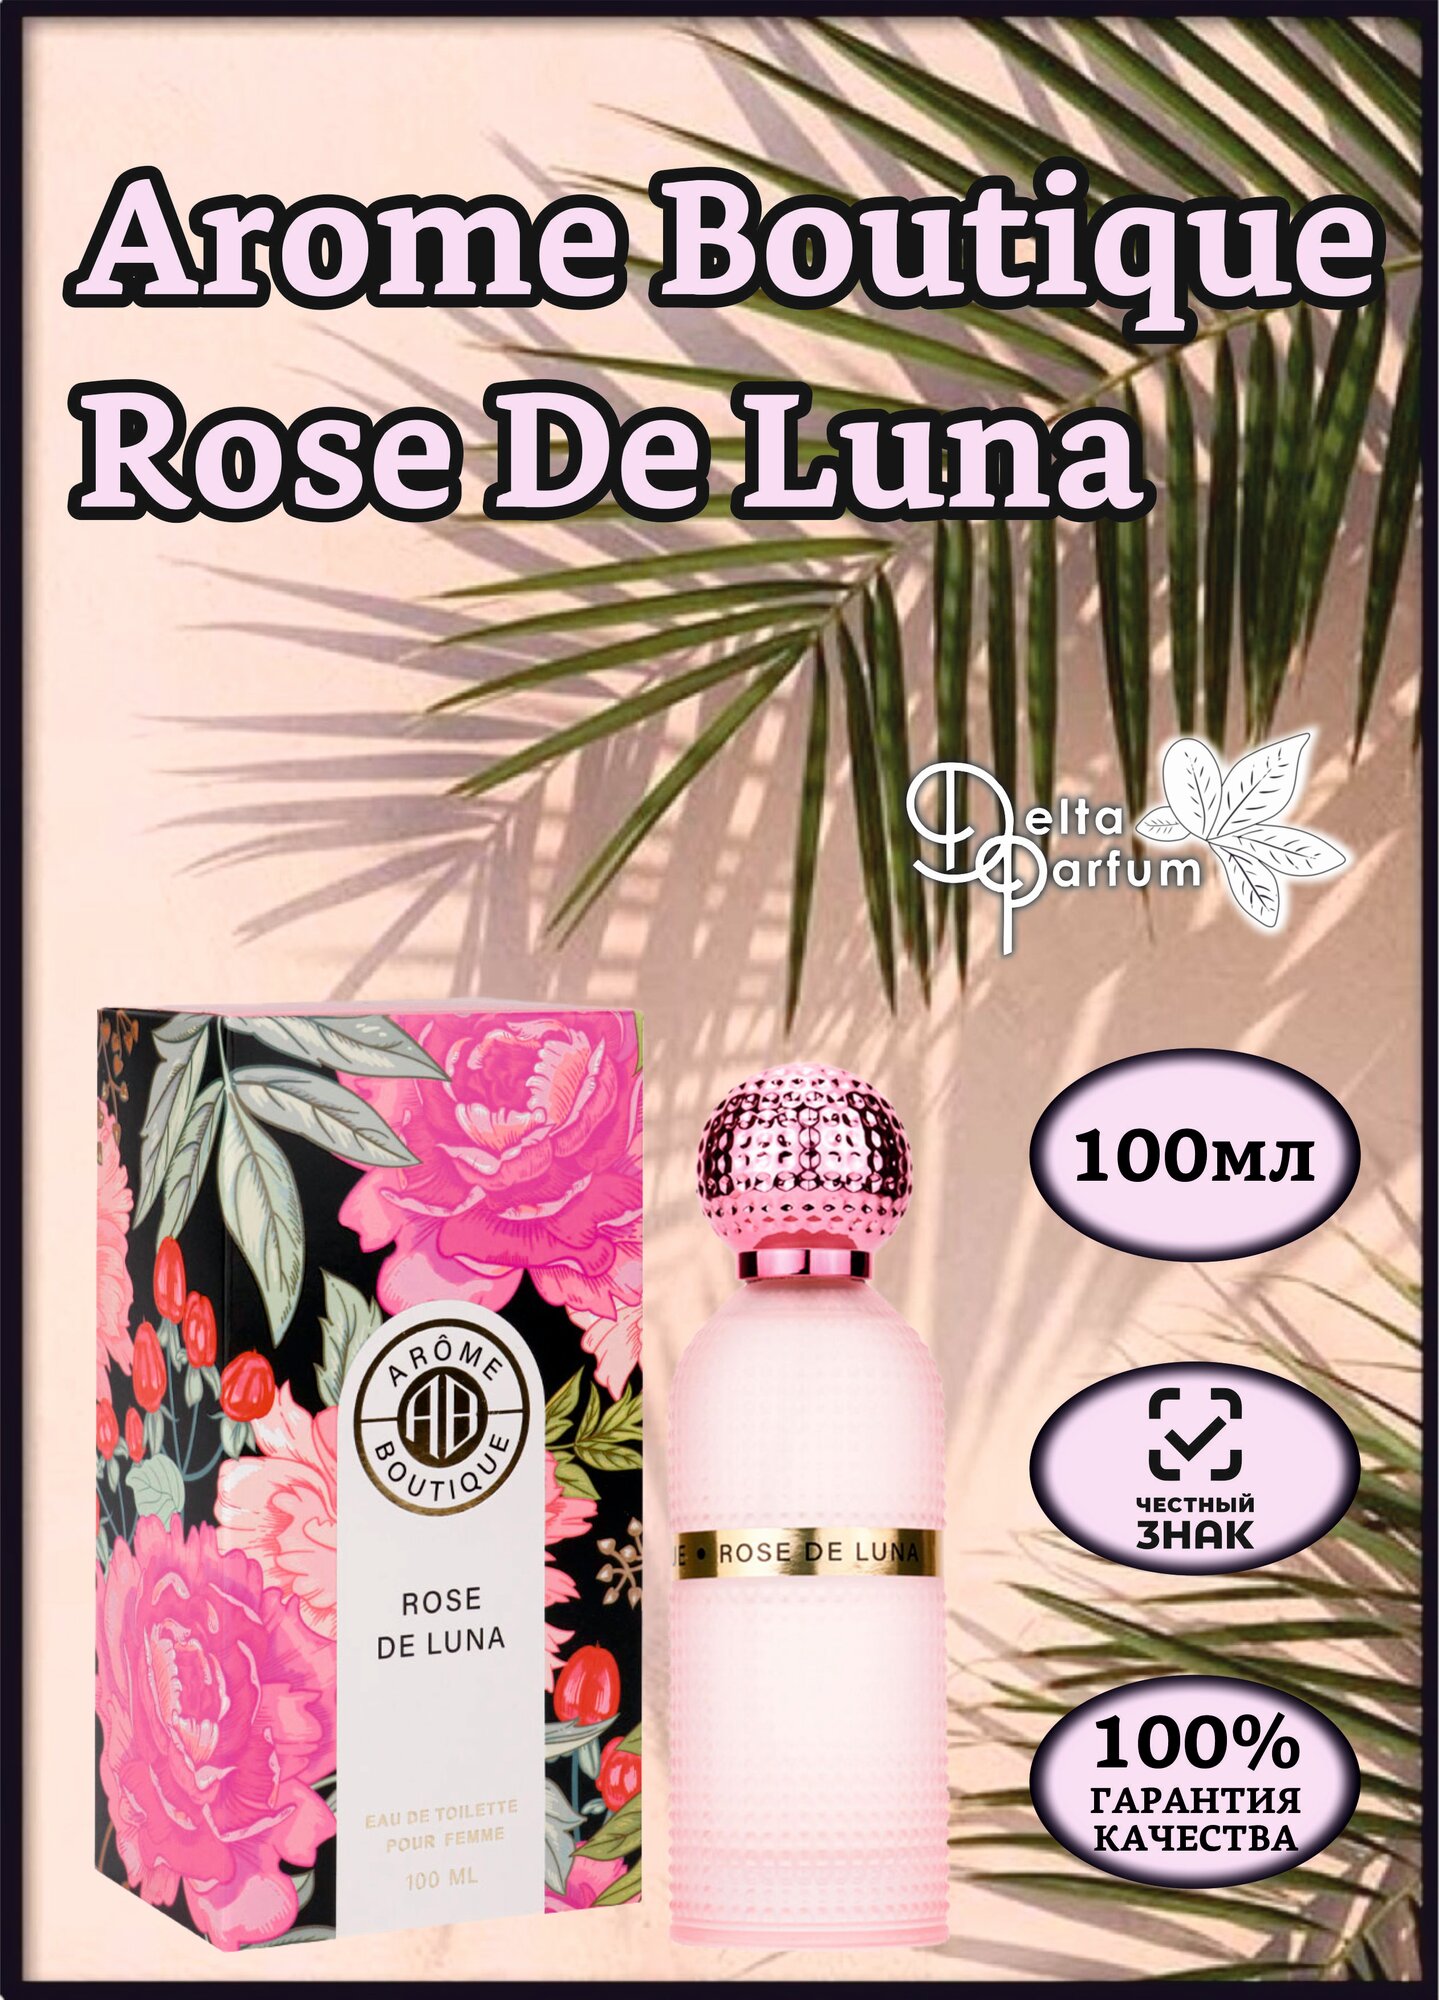 Delta parfum Туалетная вода женская Arome Boutique Rose De Luna, 100мл